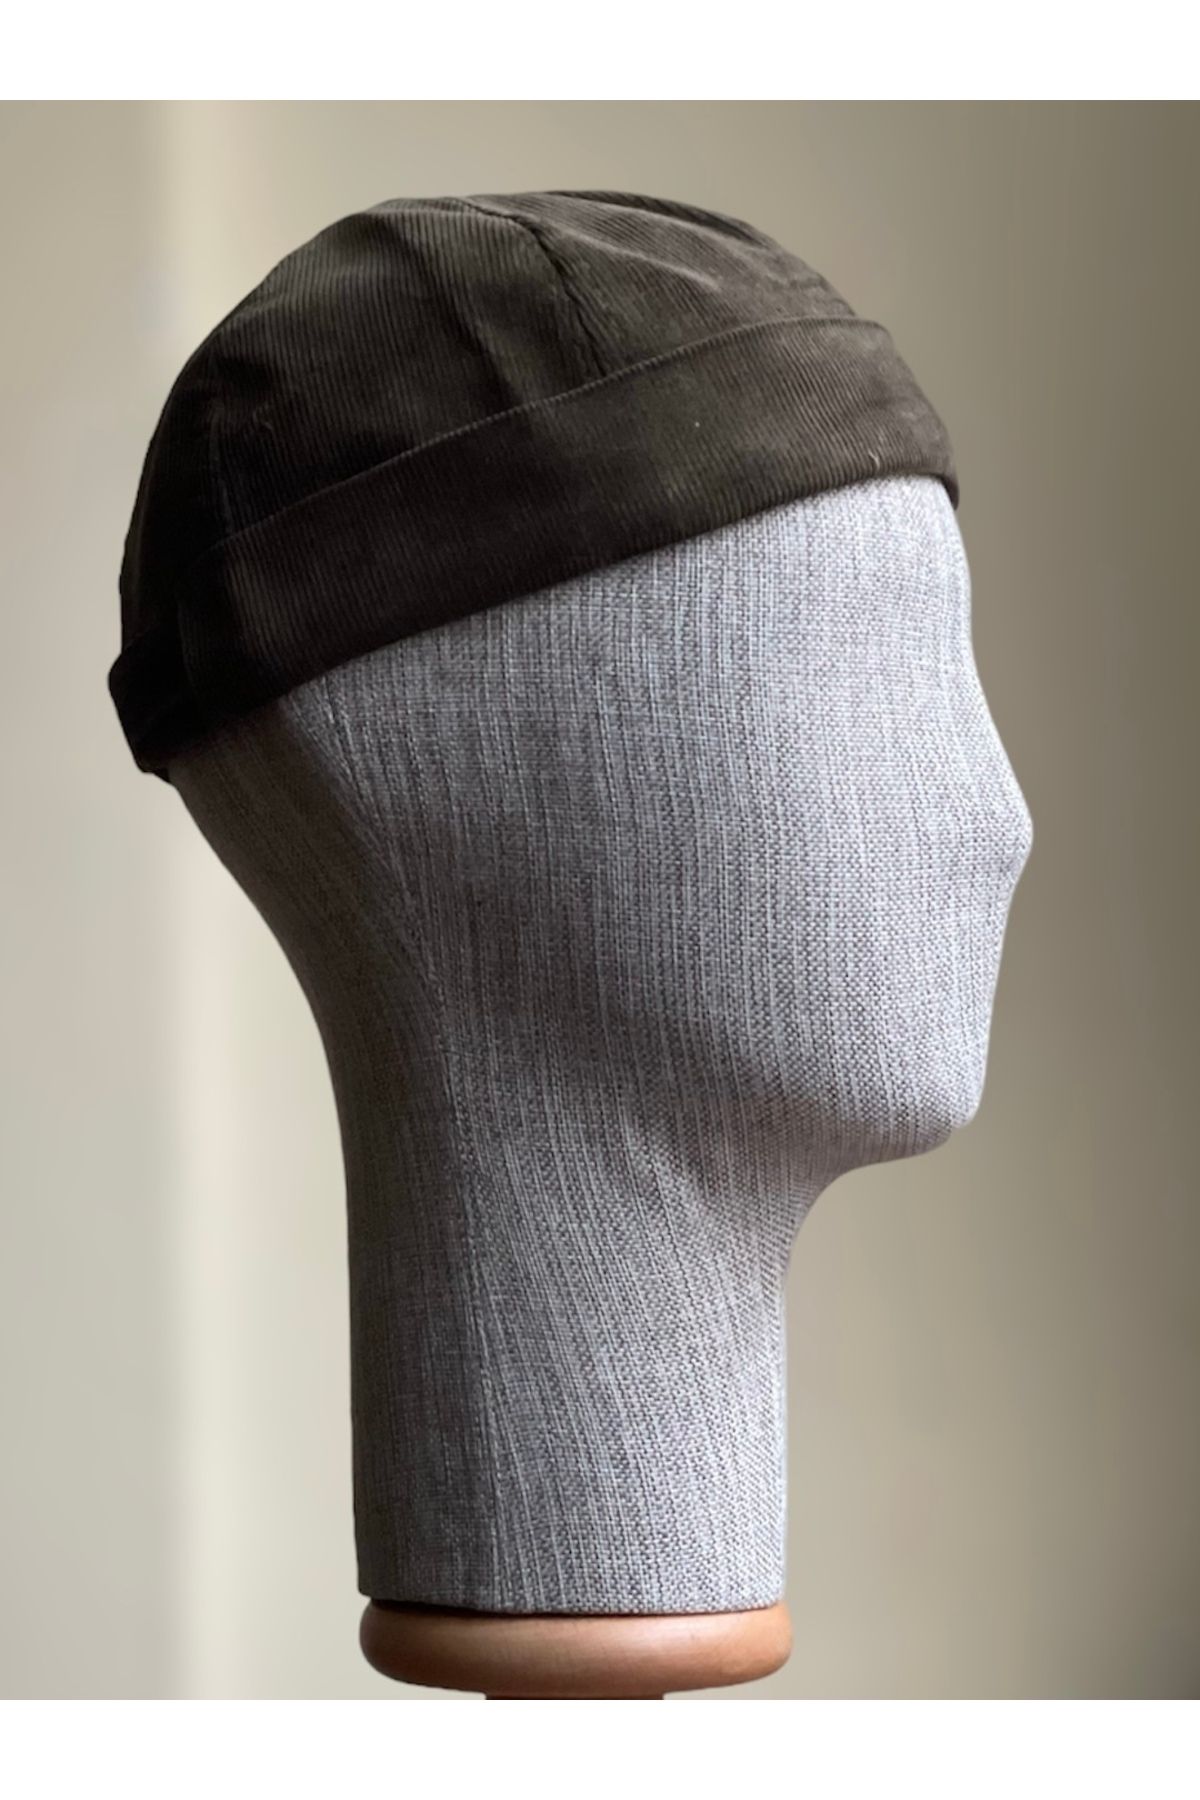 Rupen Kraft Kadife Ayarlanabilir Takke Şapka Retro Siperliksiz Şapka